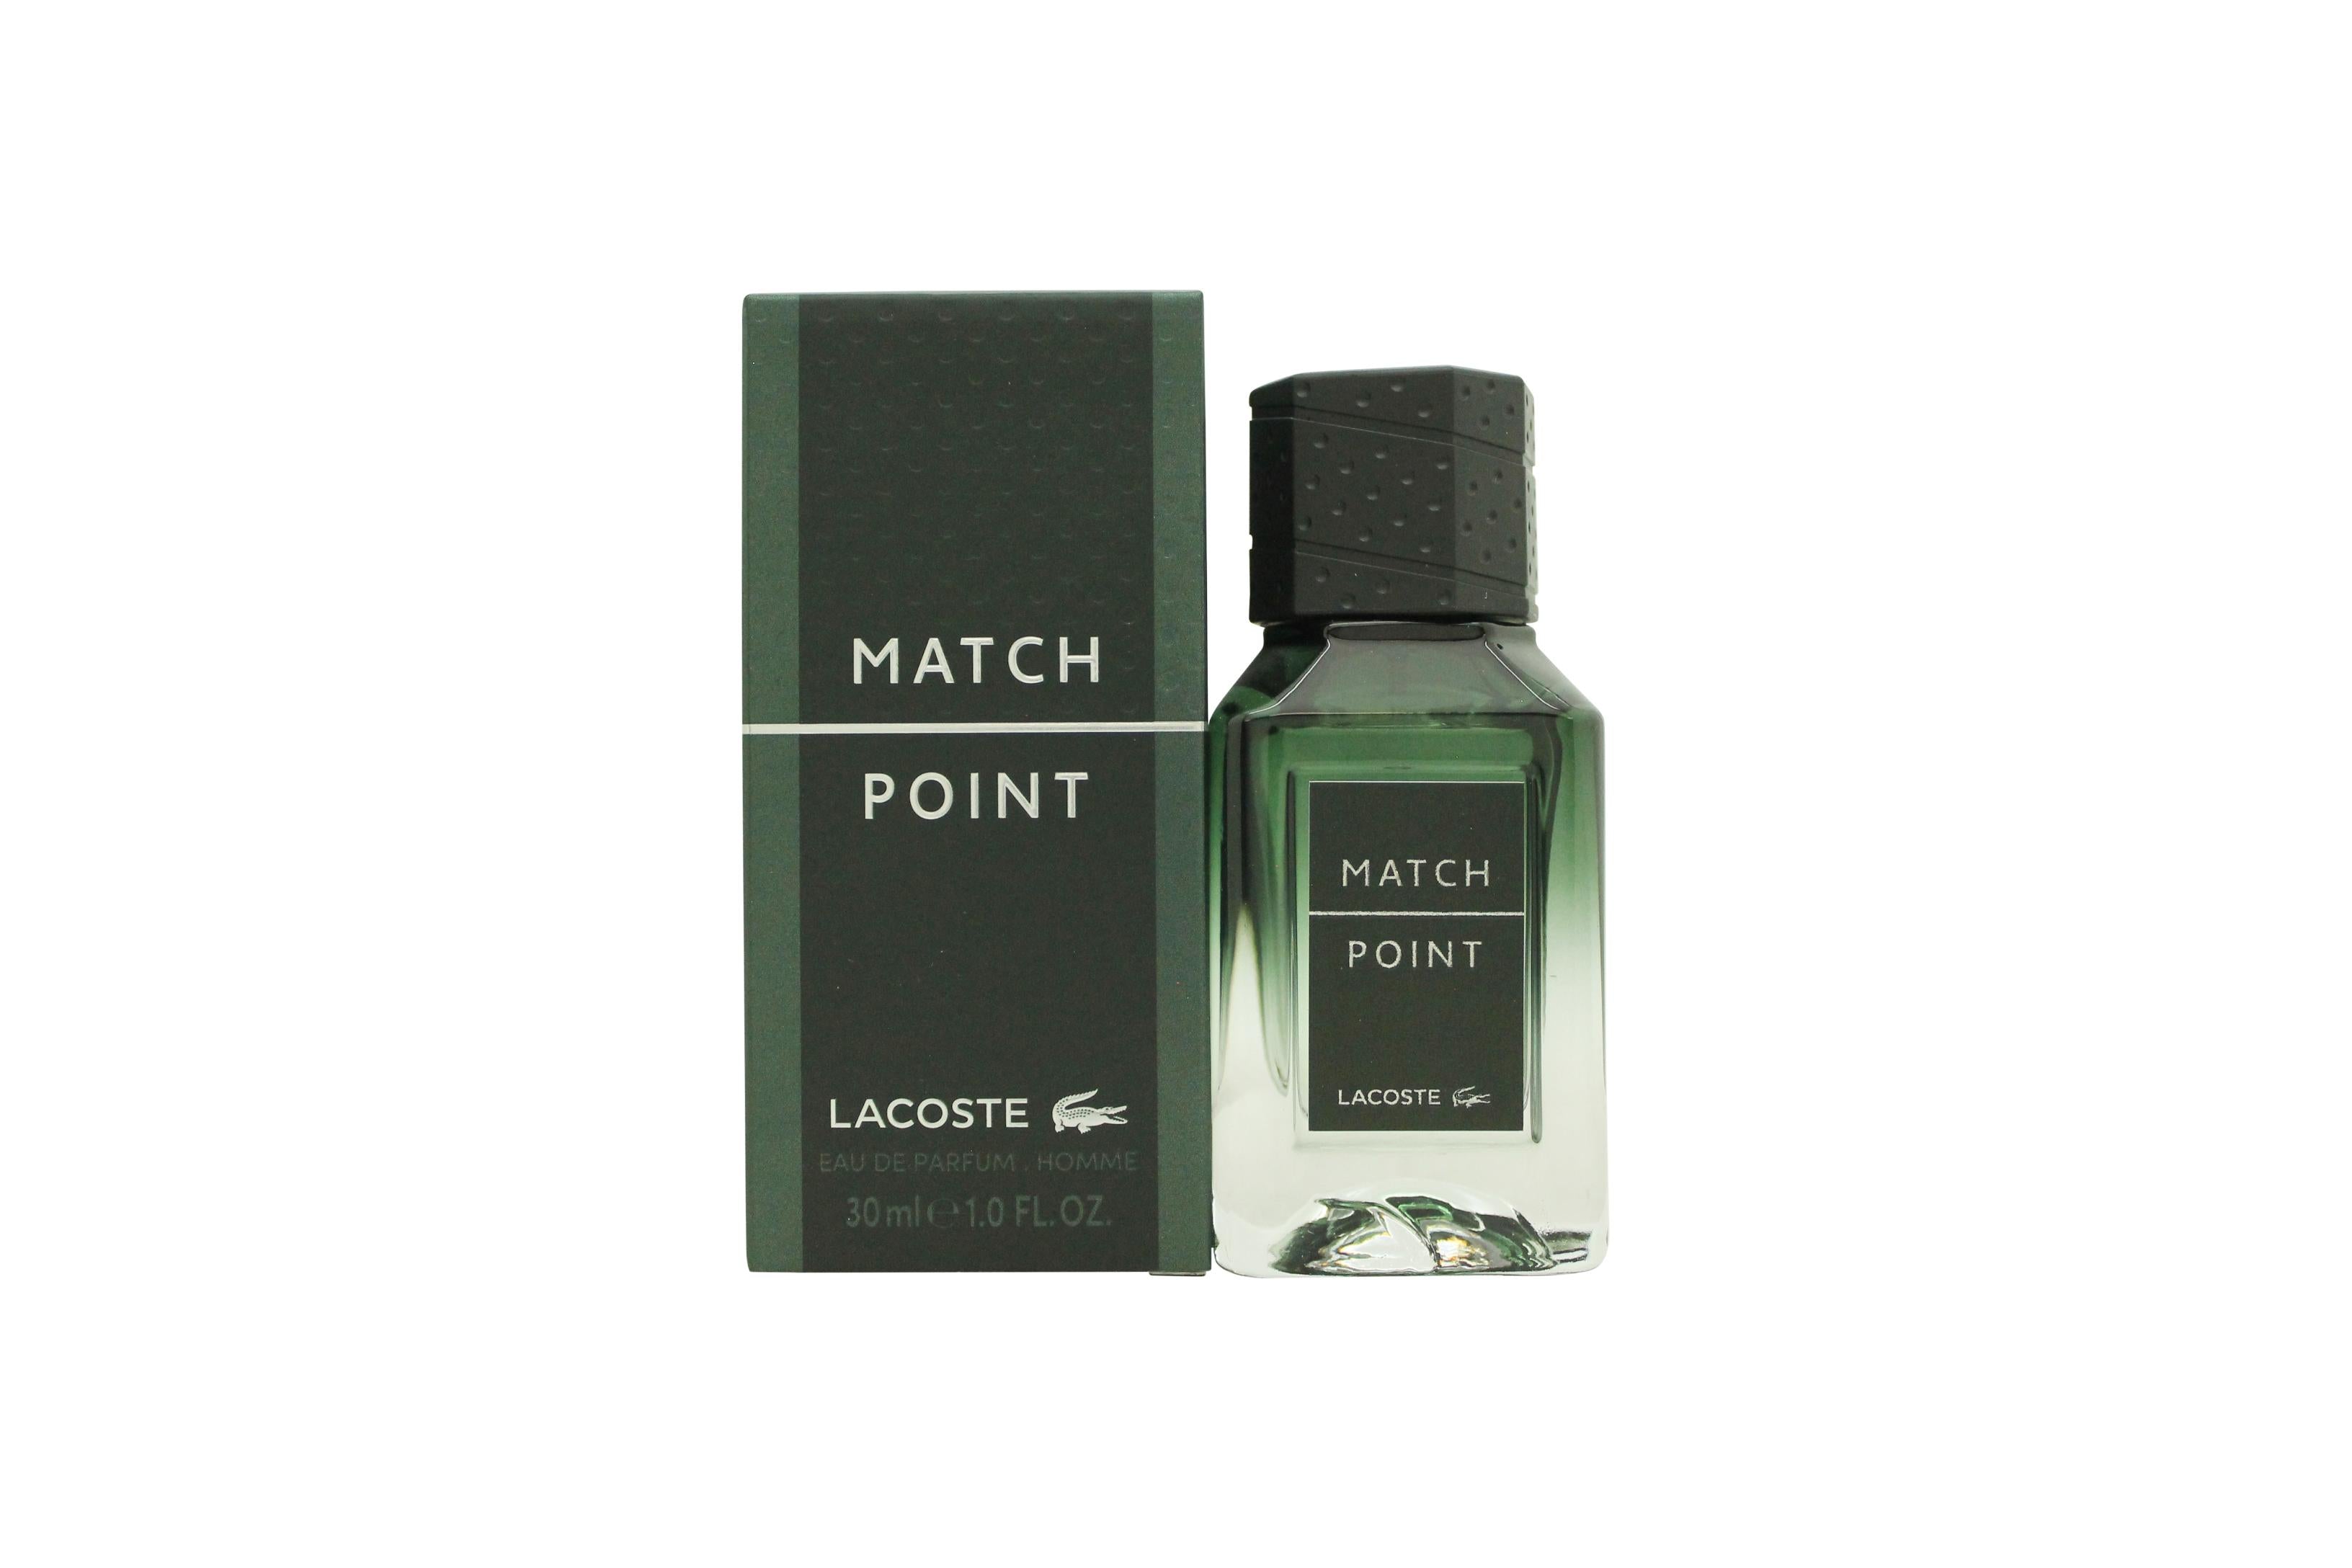 View Lacoste Match Point Eau de Parfum 30ml Spray information